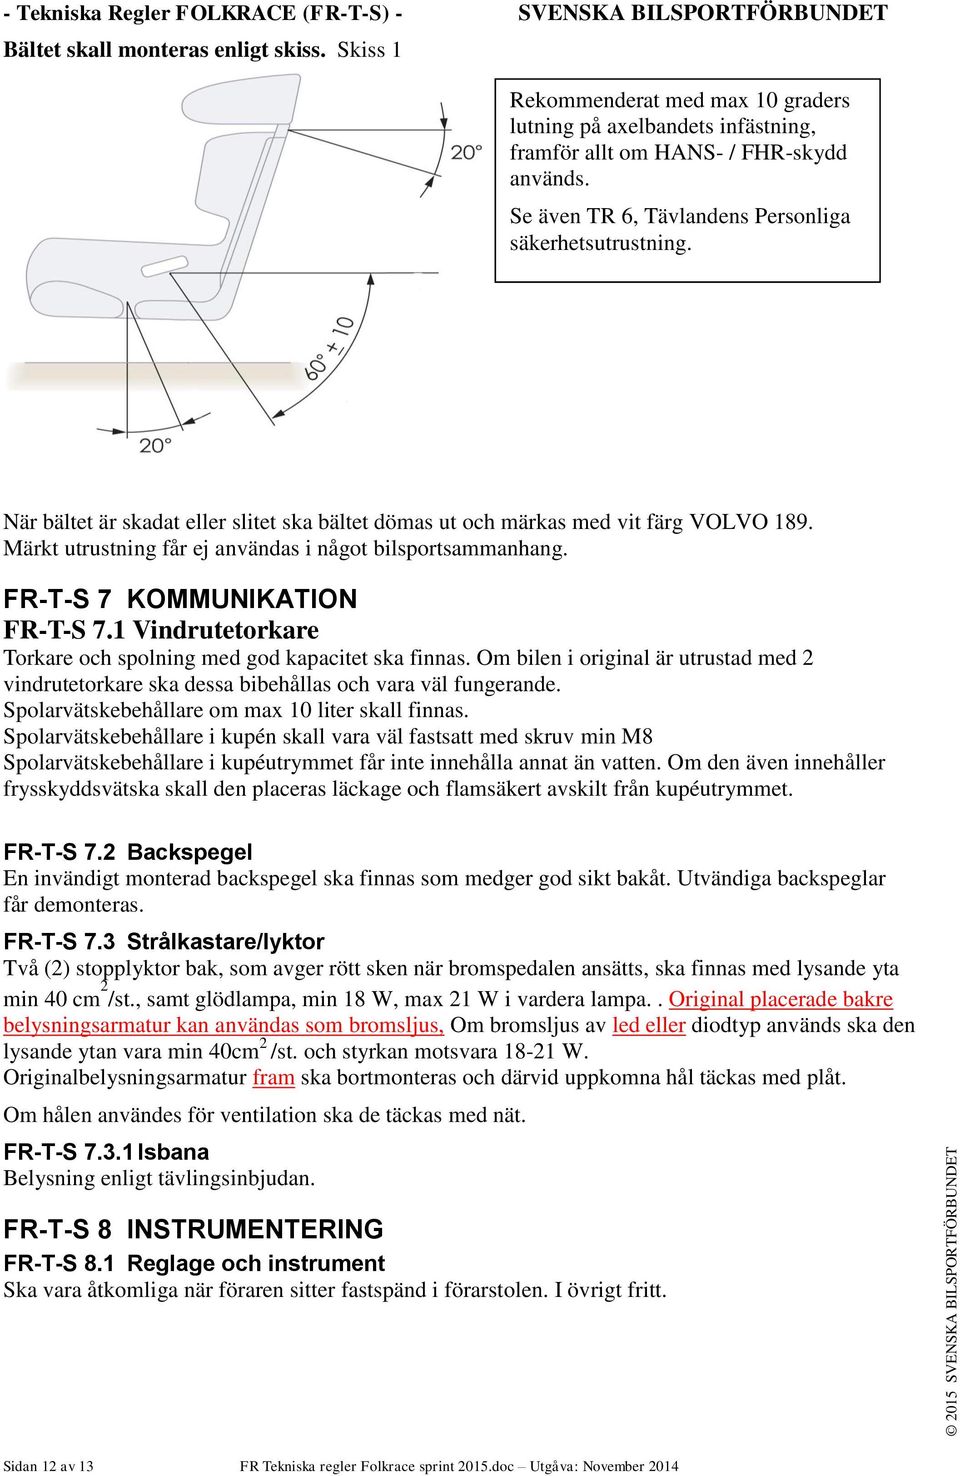 SVENSKA BILSPORTFÖRBUNDET - Innehåll FOLKRACE (FR-T-S) - Tekniska Regler.  Folkrace Sprint. Utgåva: November 2014 (Detta är första utgåvan). - PDF  Free Download